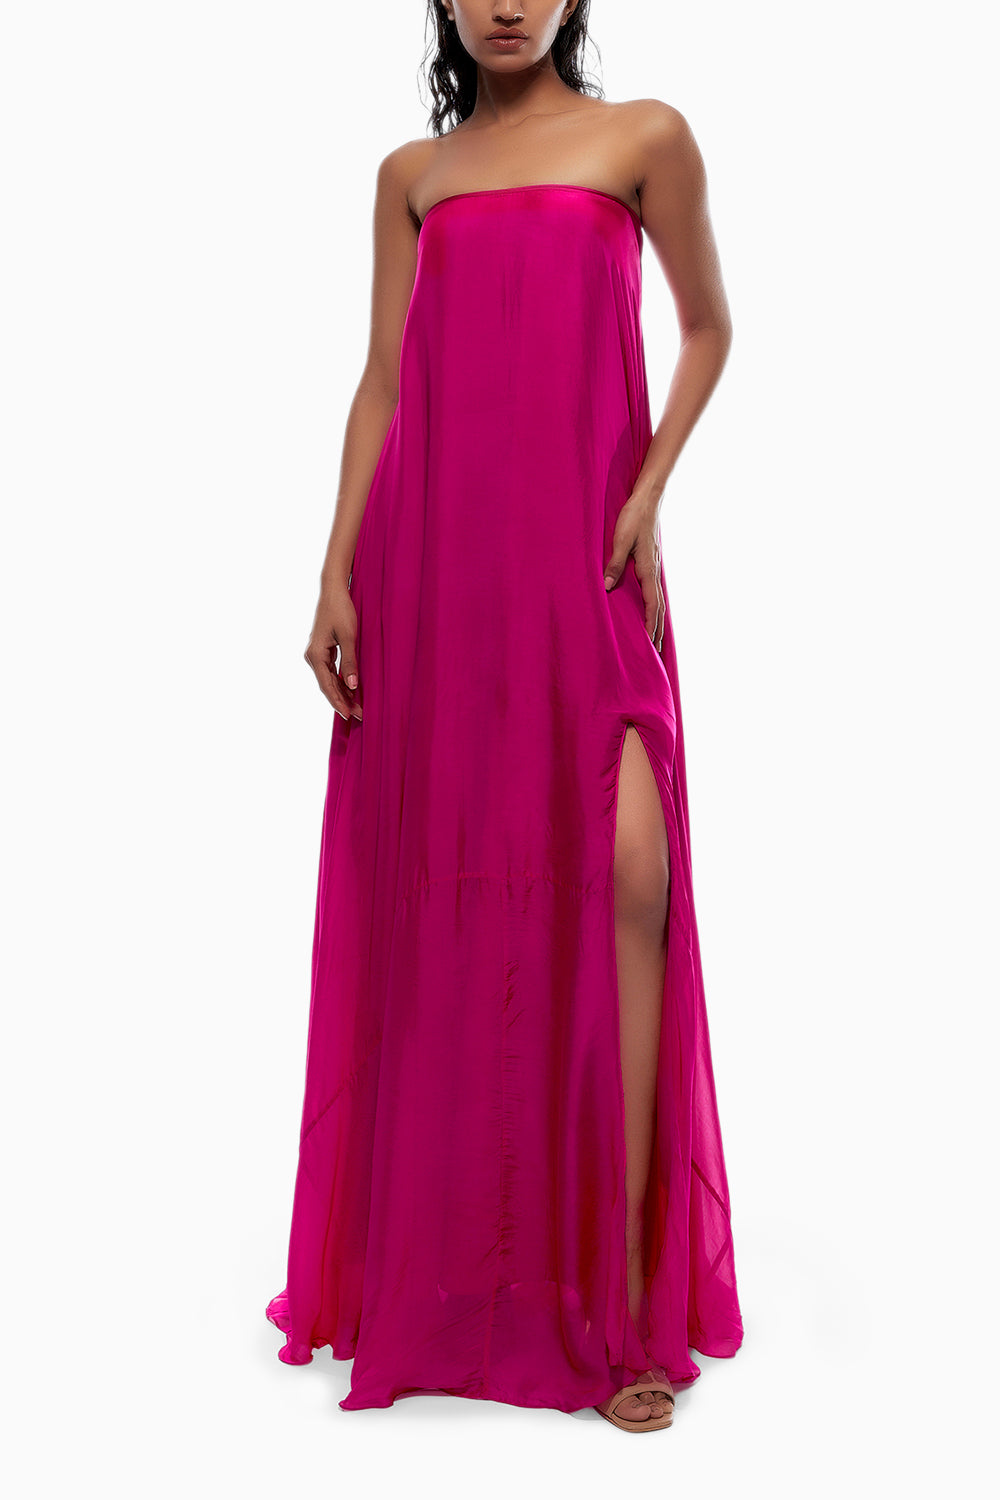 Hot Pink Chiffon Tube Dress